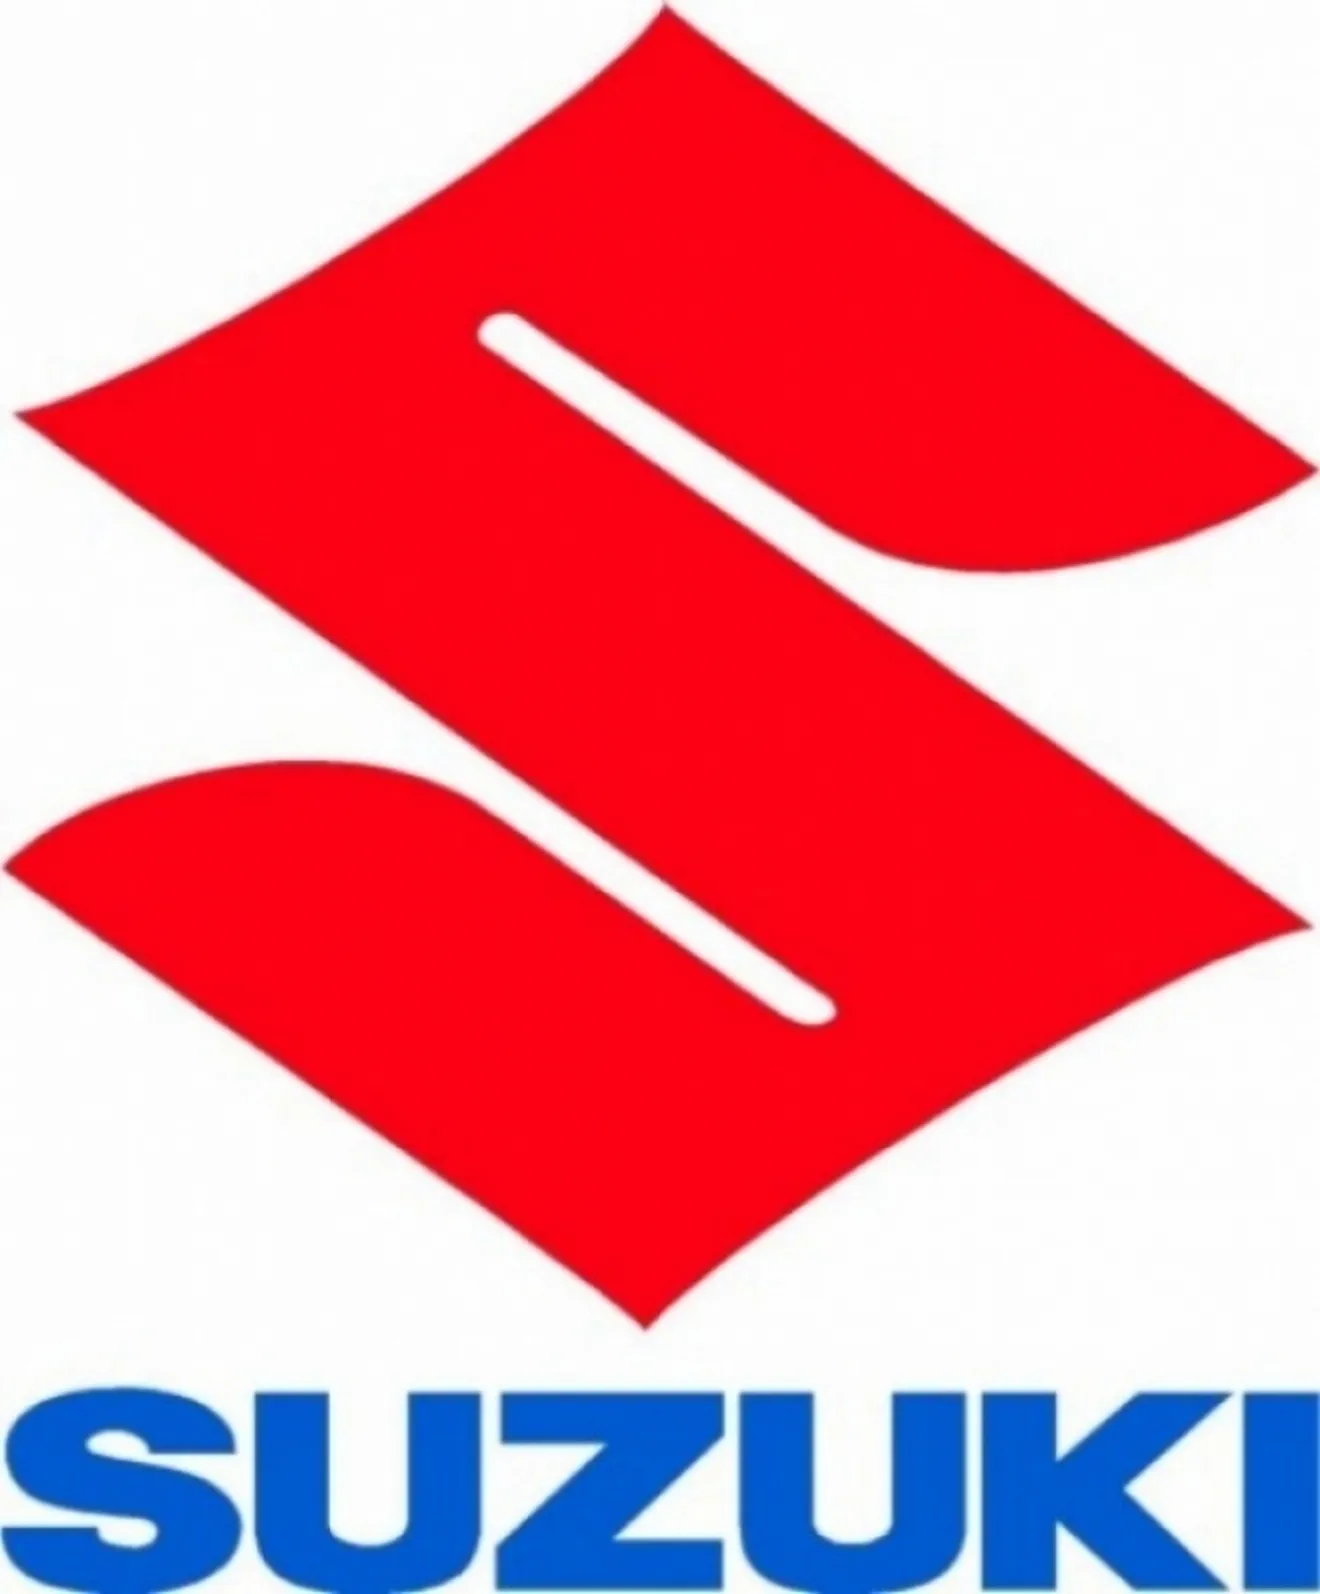 El beneficio neto de Suzuki cayó un 66% en el ejercicio 2008-2009